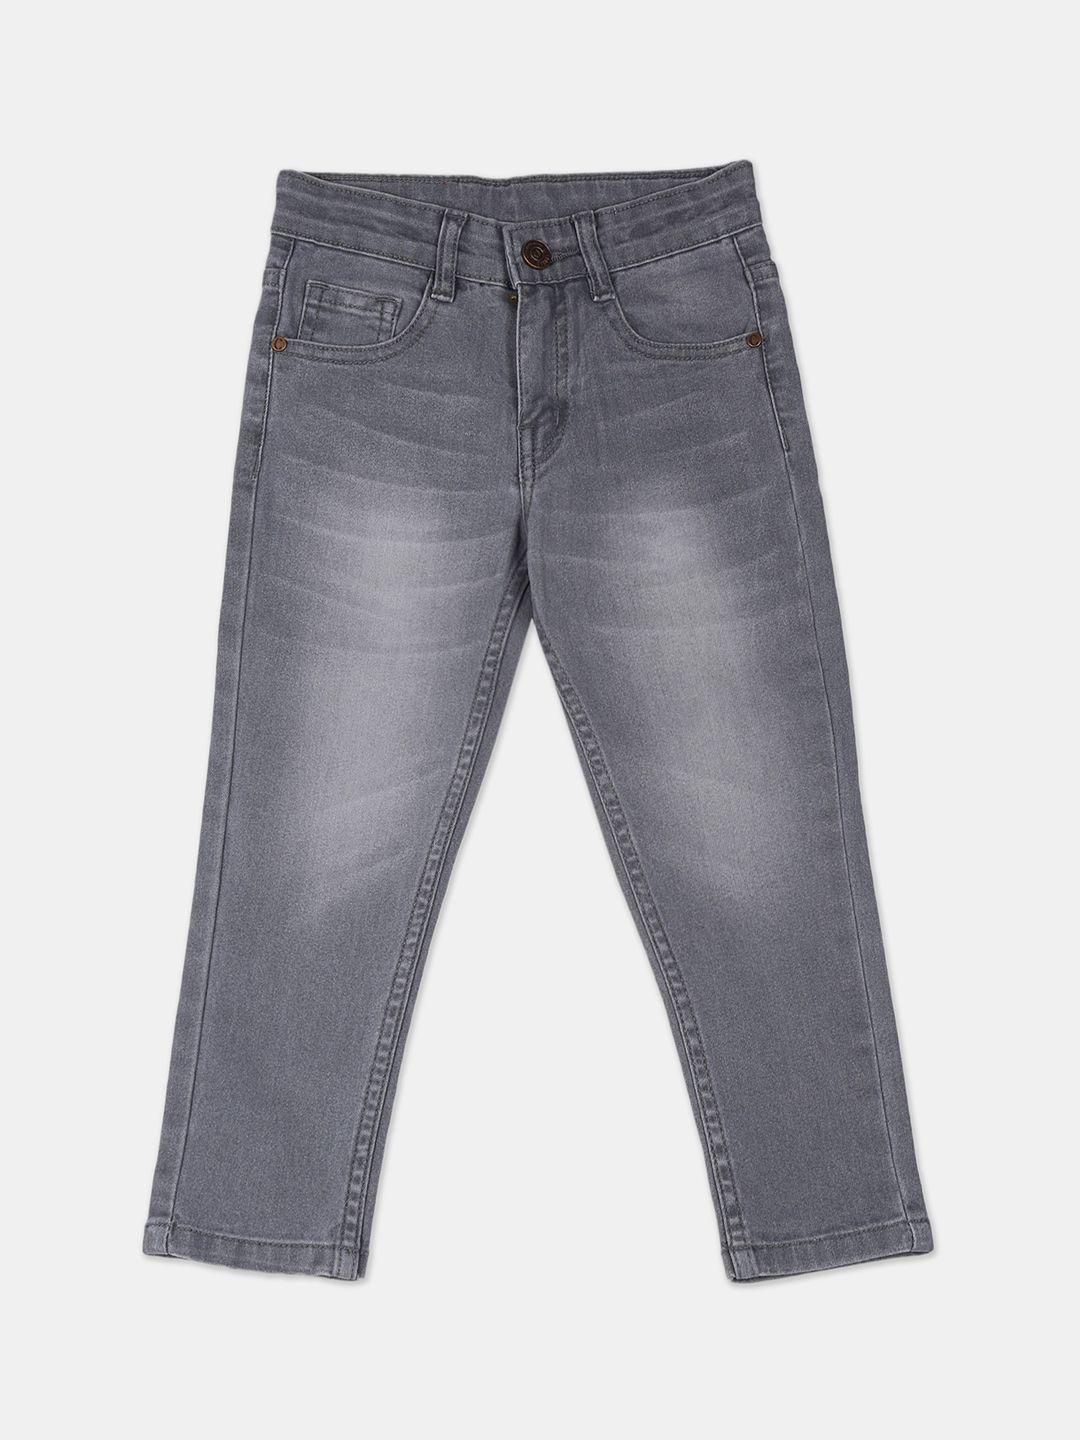 cherokee boys grey slim fit jeans